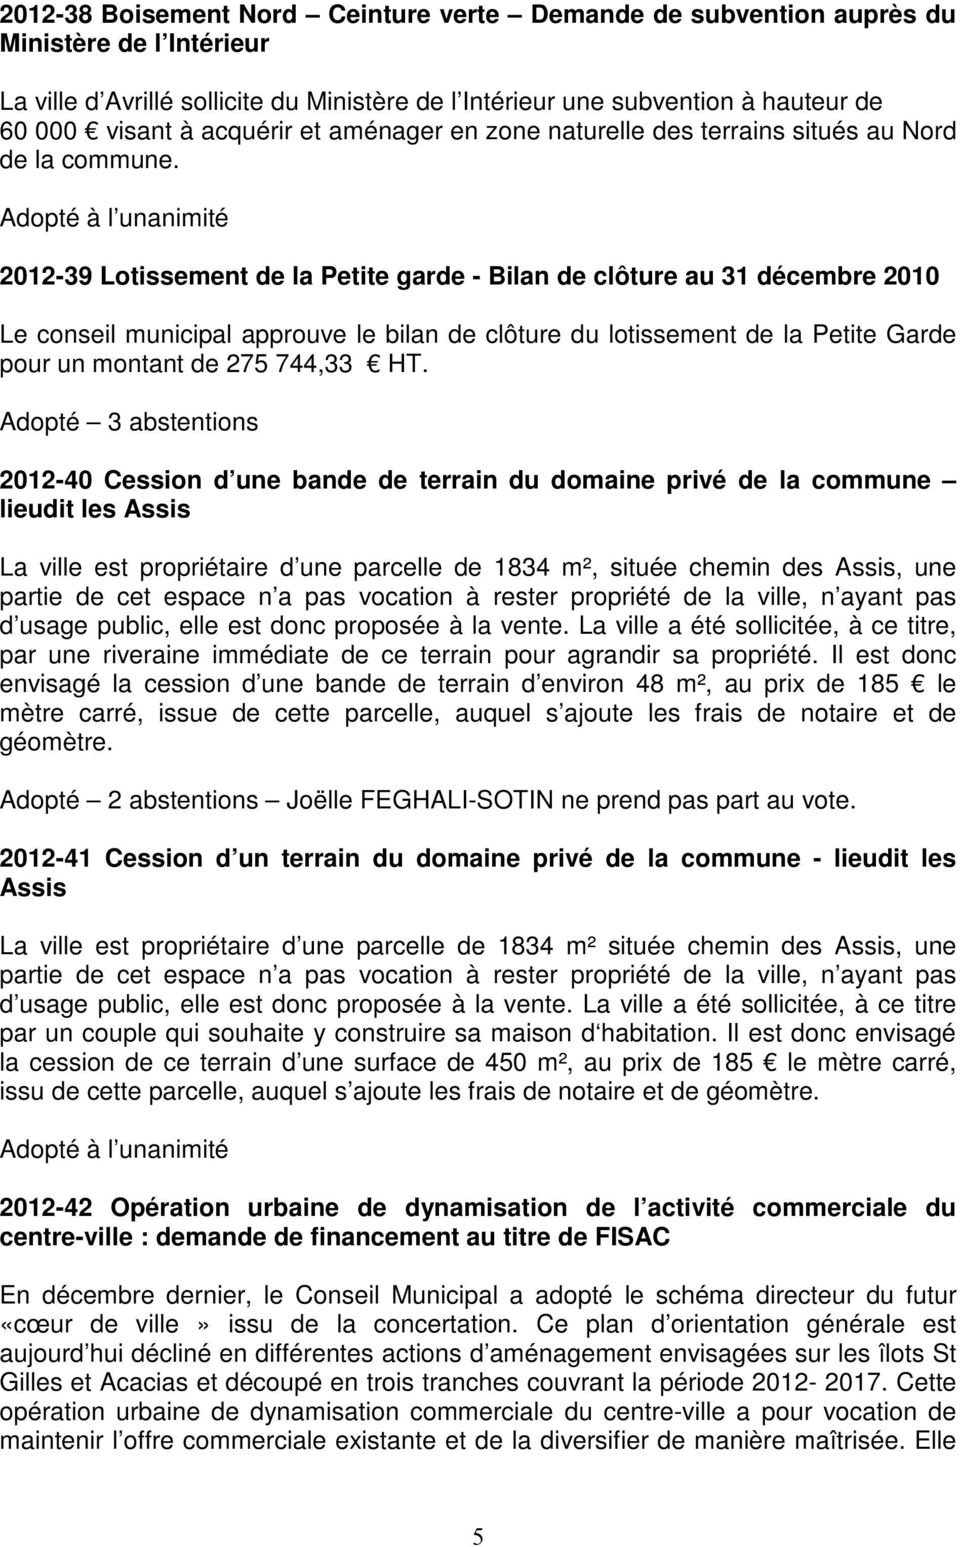 2012-39 Lotissement de la Petite garde - Bilan de clôture au 31 décembre 2010 Le conseil municipal approuve le bilan de clôture du lotissement de la Petite Garde pour un montant de 275 744,33 HT.